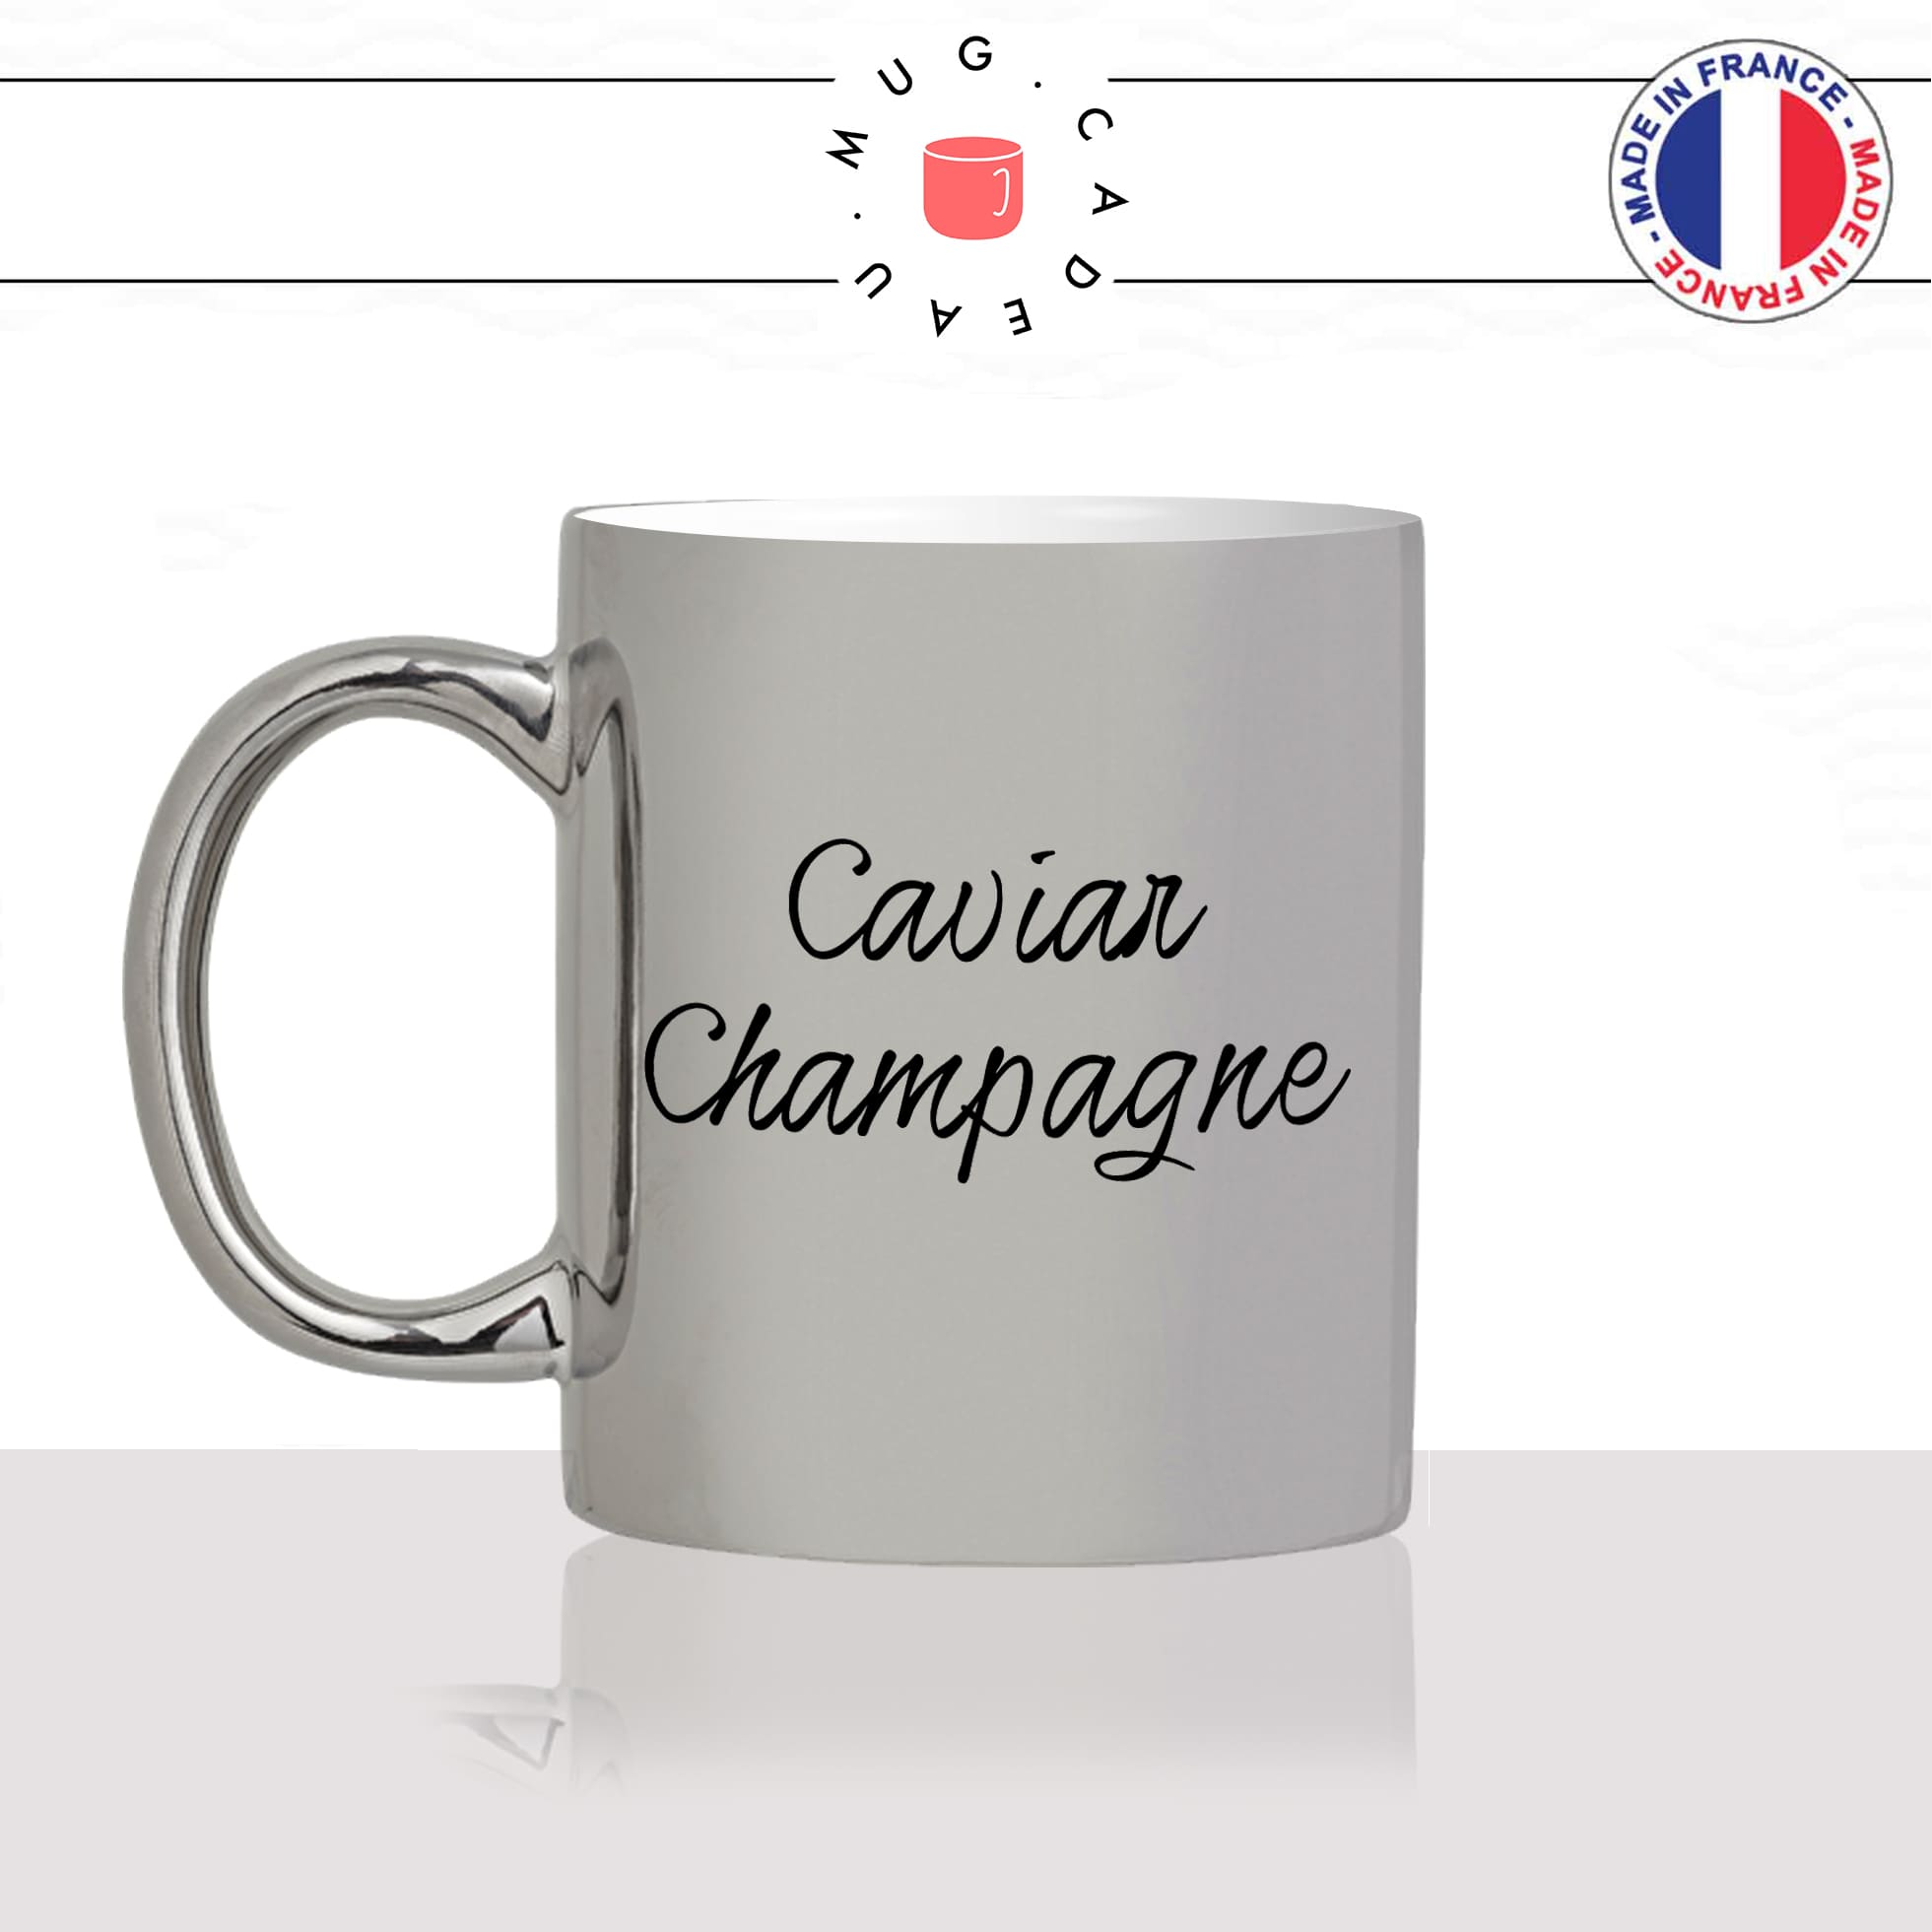 mug-tasse-argenté-argent-gris-silver-unique-caviar-champagne-riche-apéro-homme-femme-vacances-humour-fun-cool-idée-cadeau-original